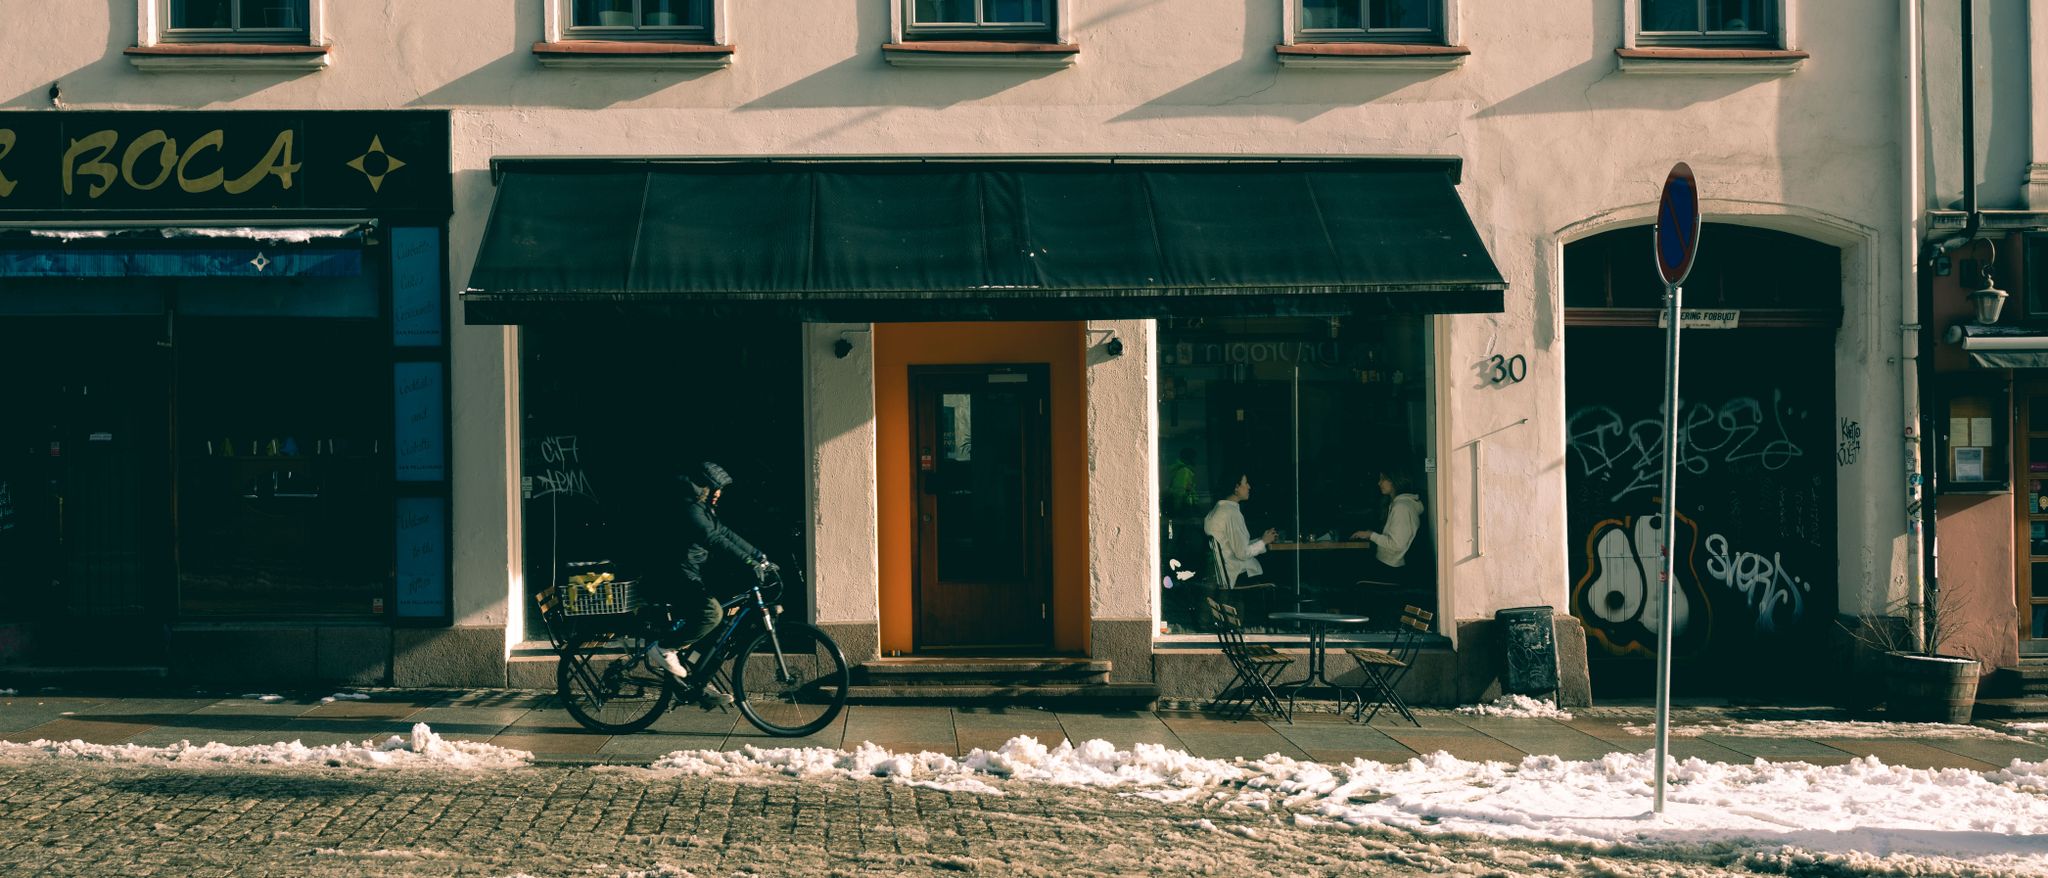 Vinbaren Fat City på Grünerløkka er byens kanskje beste guttekollektiv